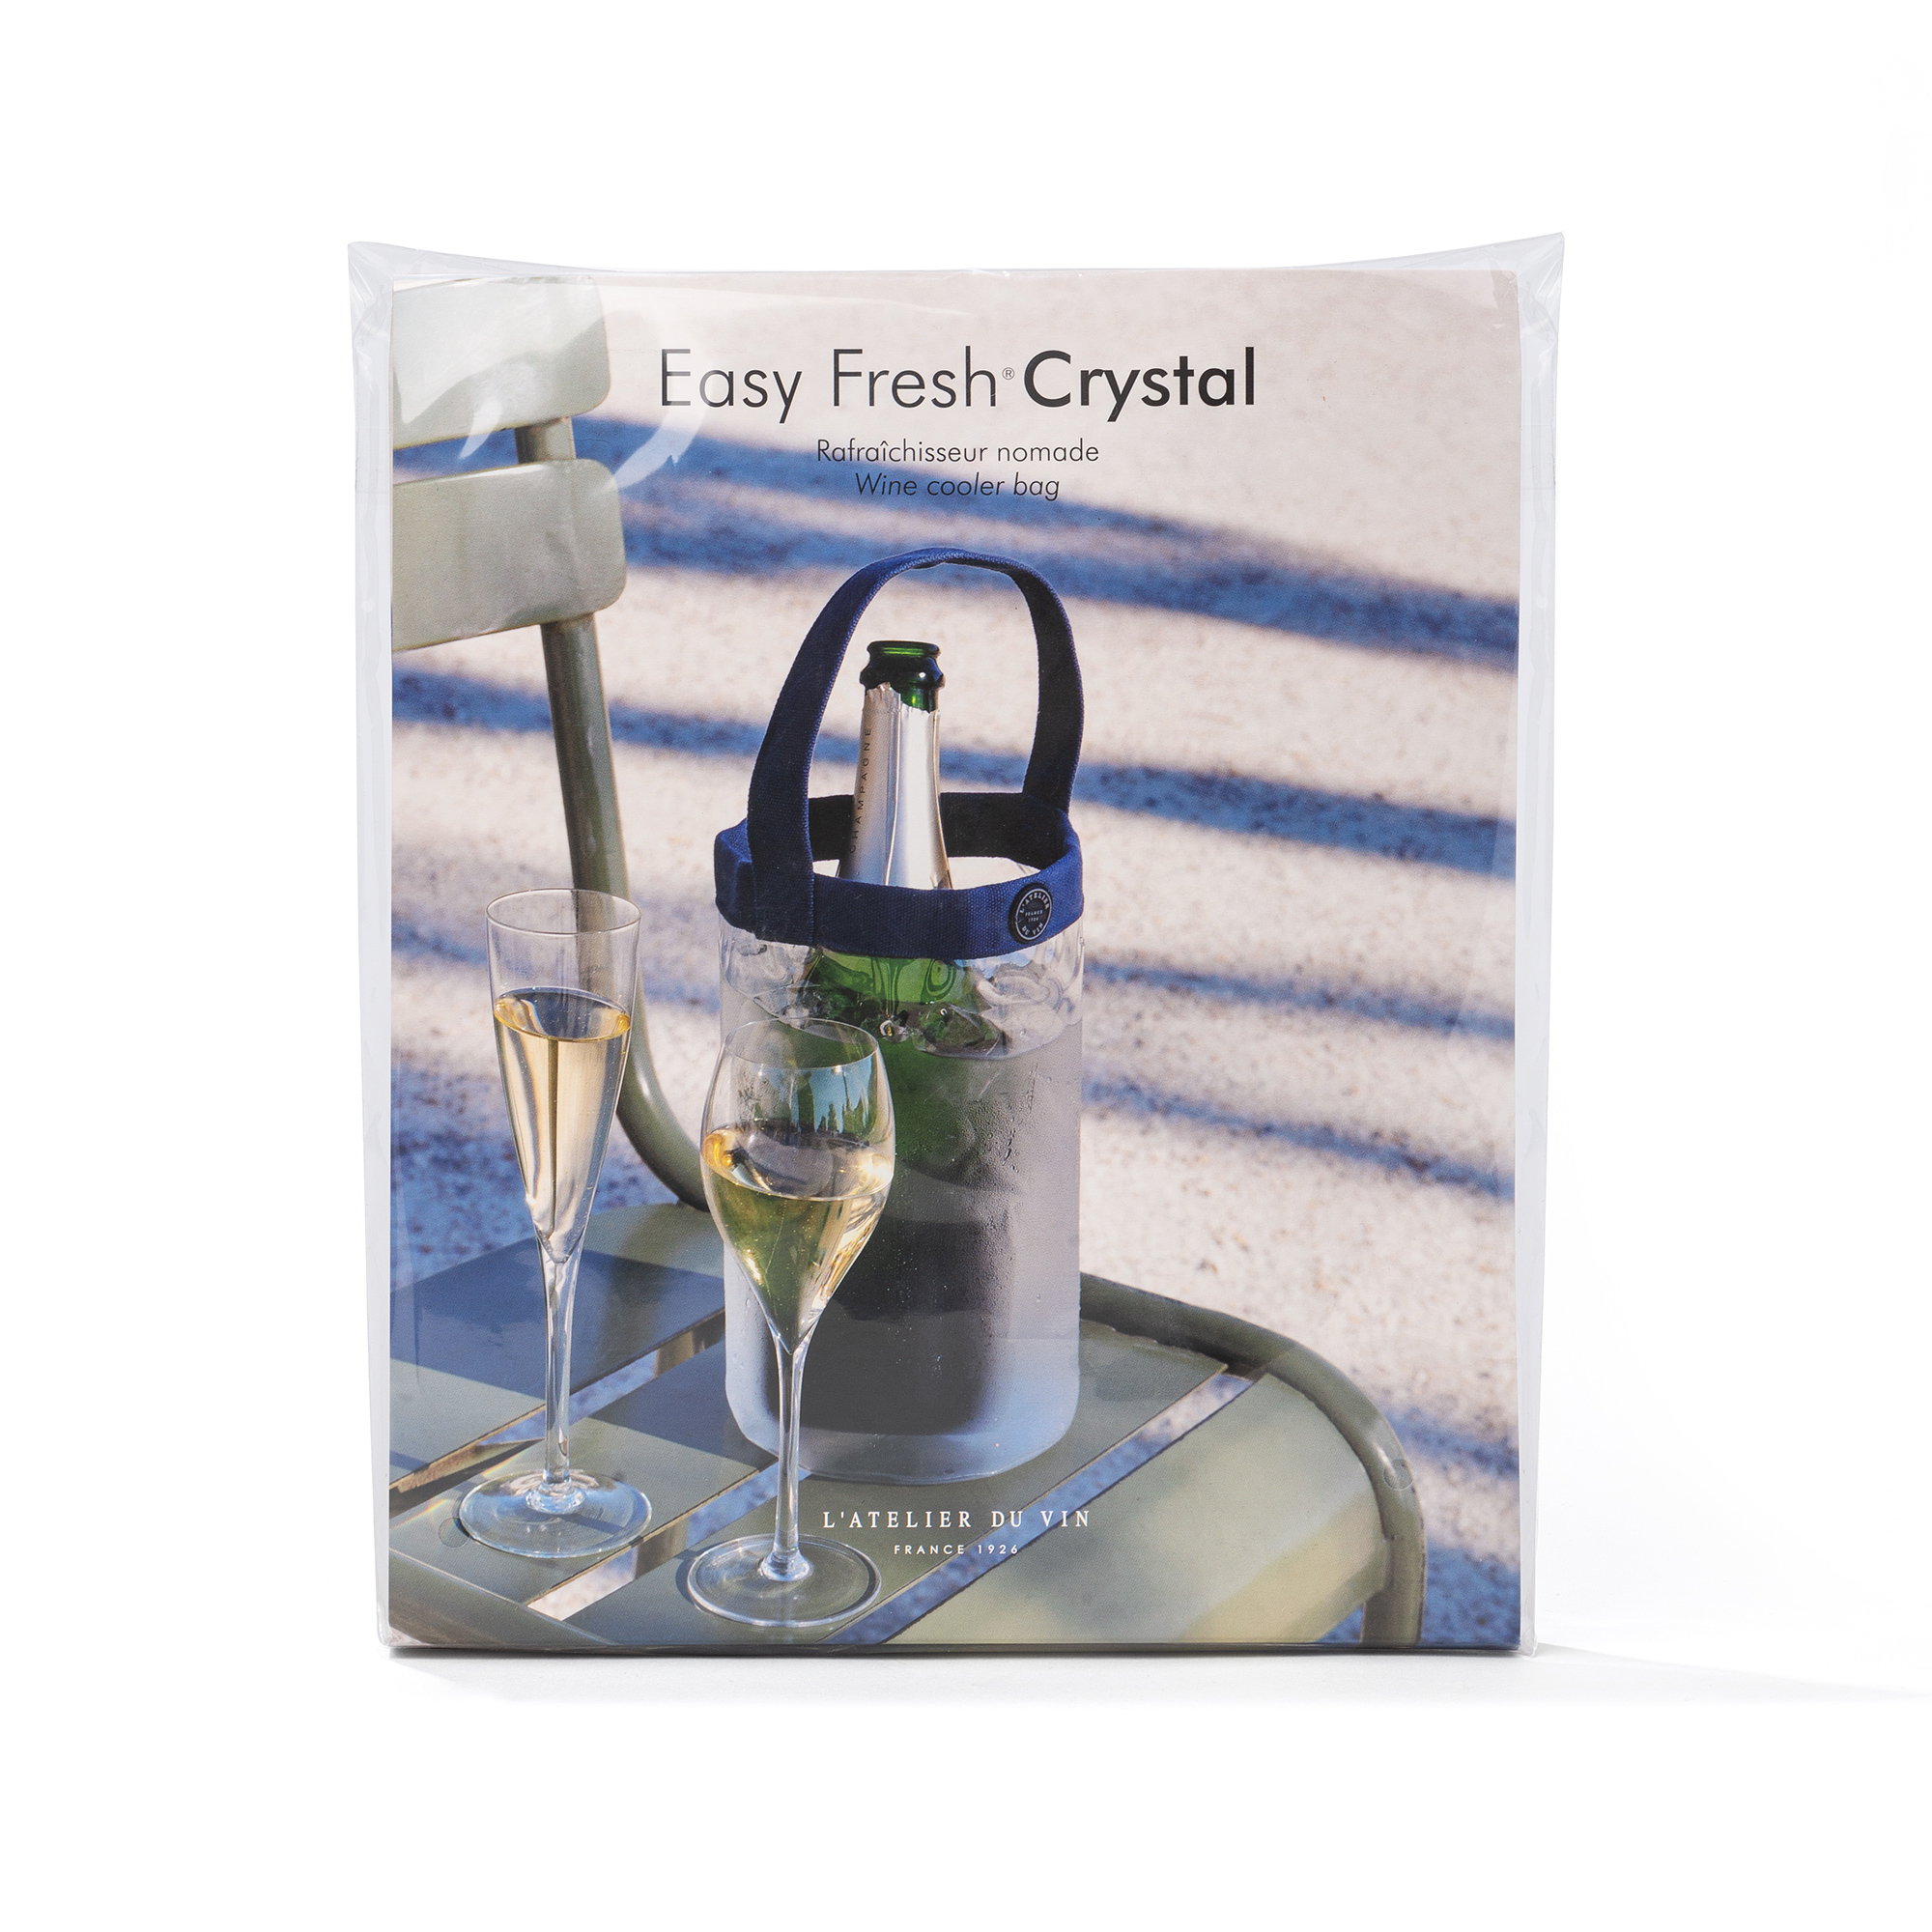 Easy Fresh Crystal pack